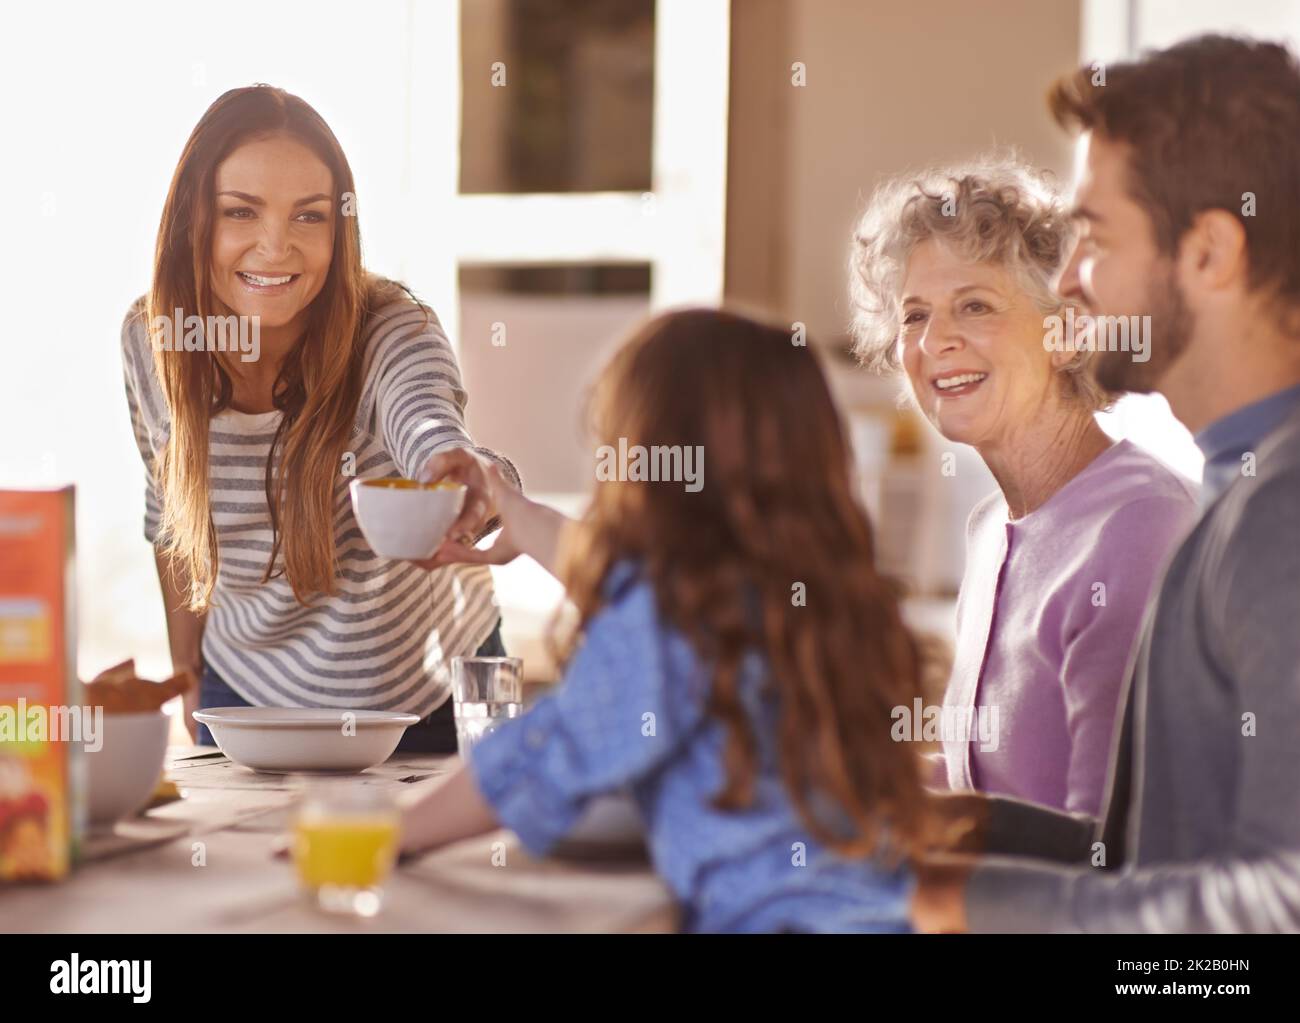 Beginnen Sie den Tag mit einem Frühstück. Eine Aufnahme einer Familie, die zusammen frühstückte. Stockfoto